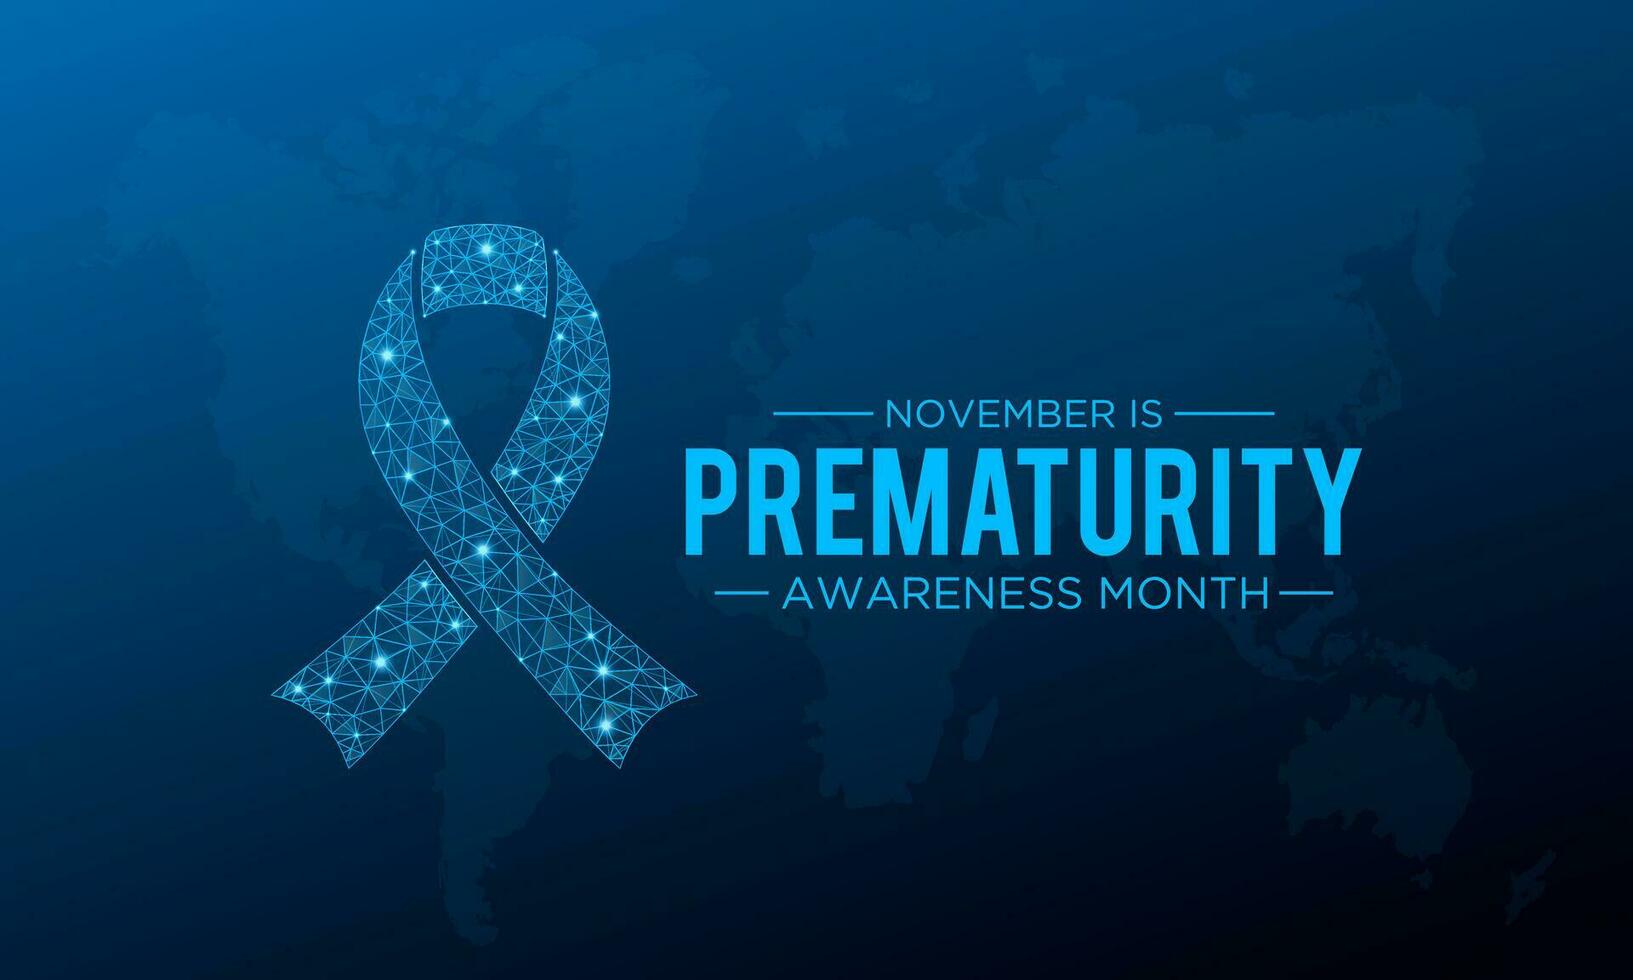 prematuriteit bewustzijn maand is opgemerkt elke jaar in november. november is nationaal prematuriteit bewustzijn maand. vector sjabloon voor banier, groet kaart, poster met achtergrond.